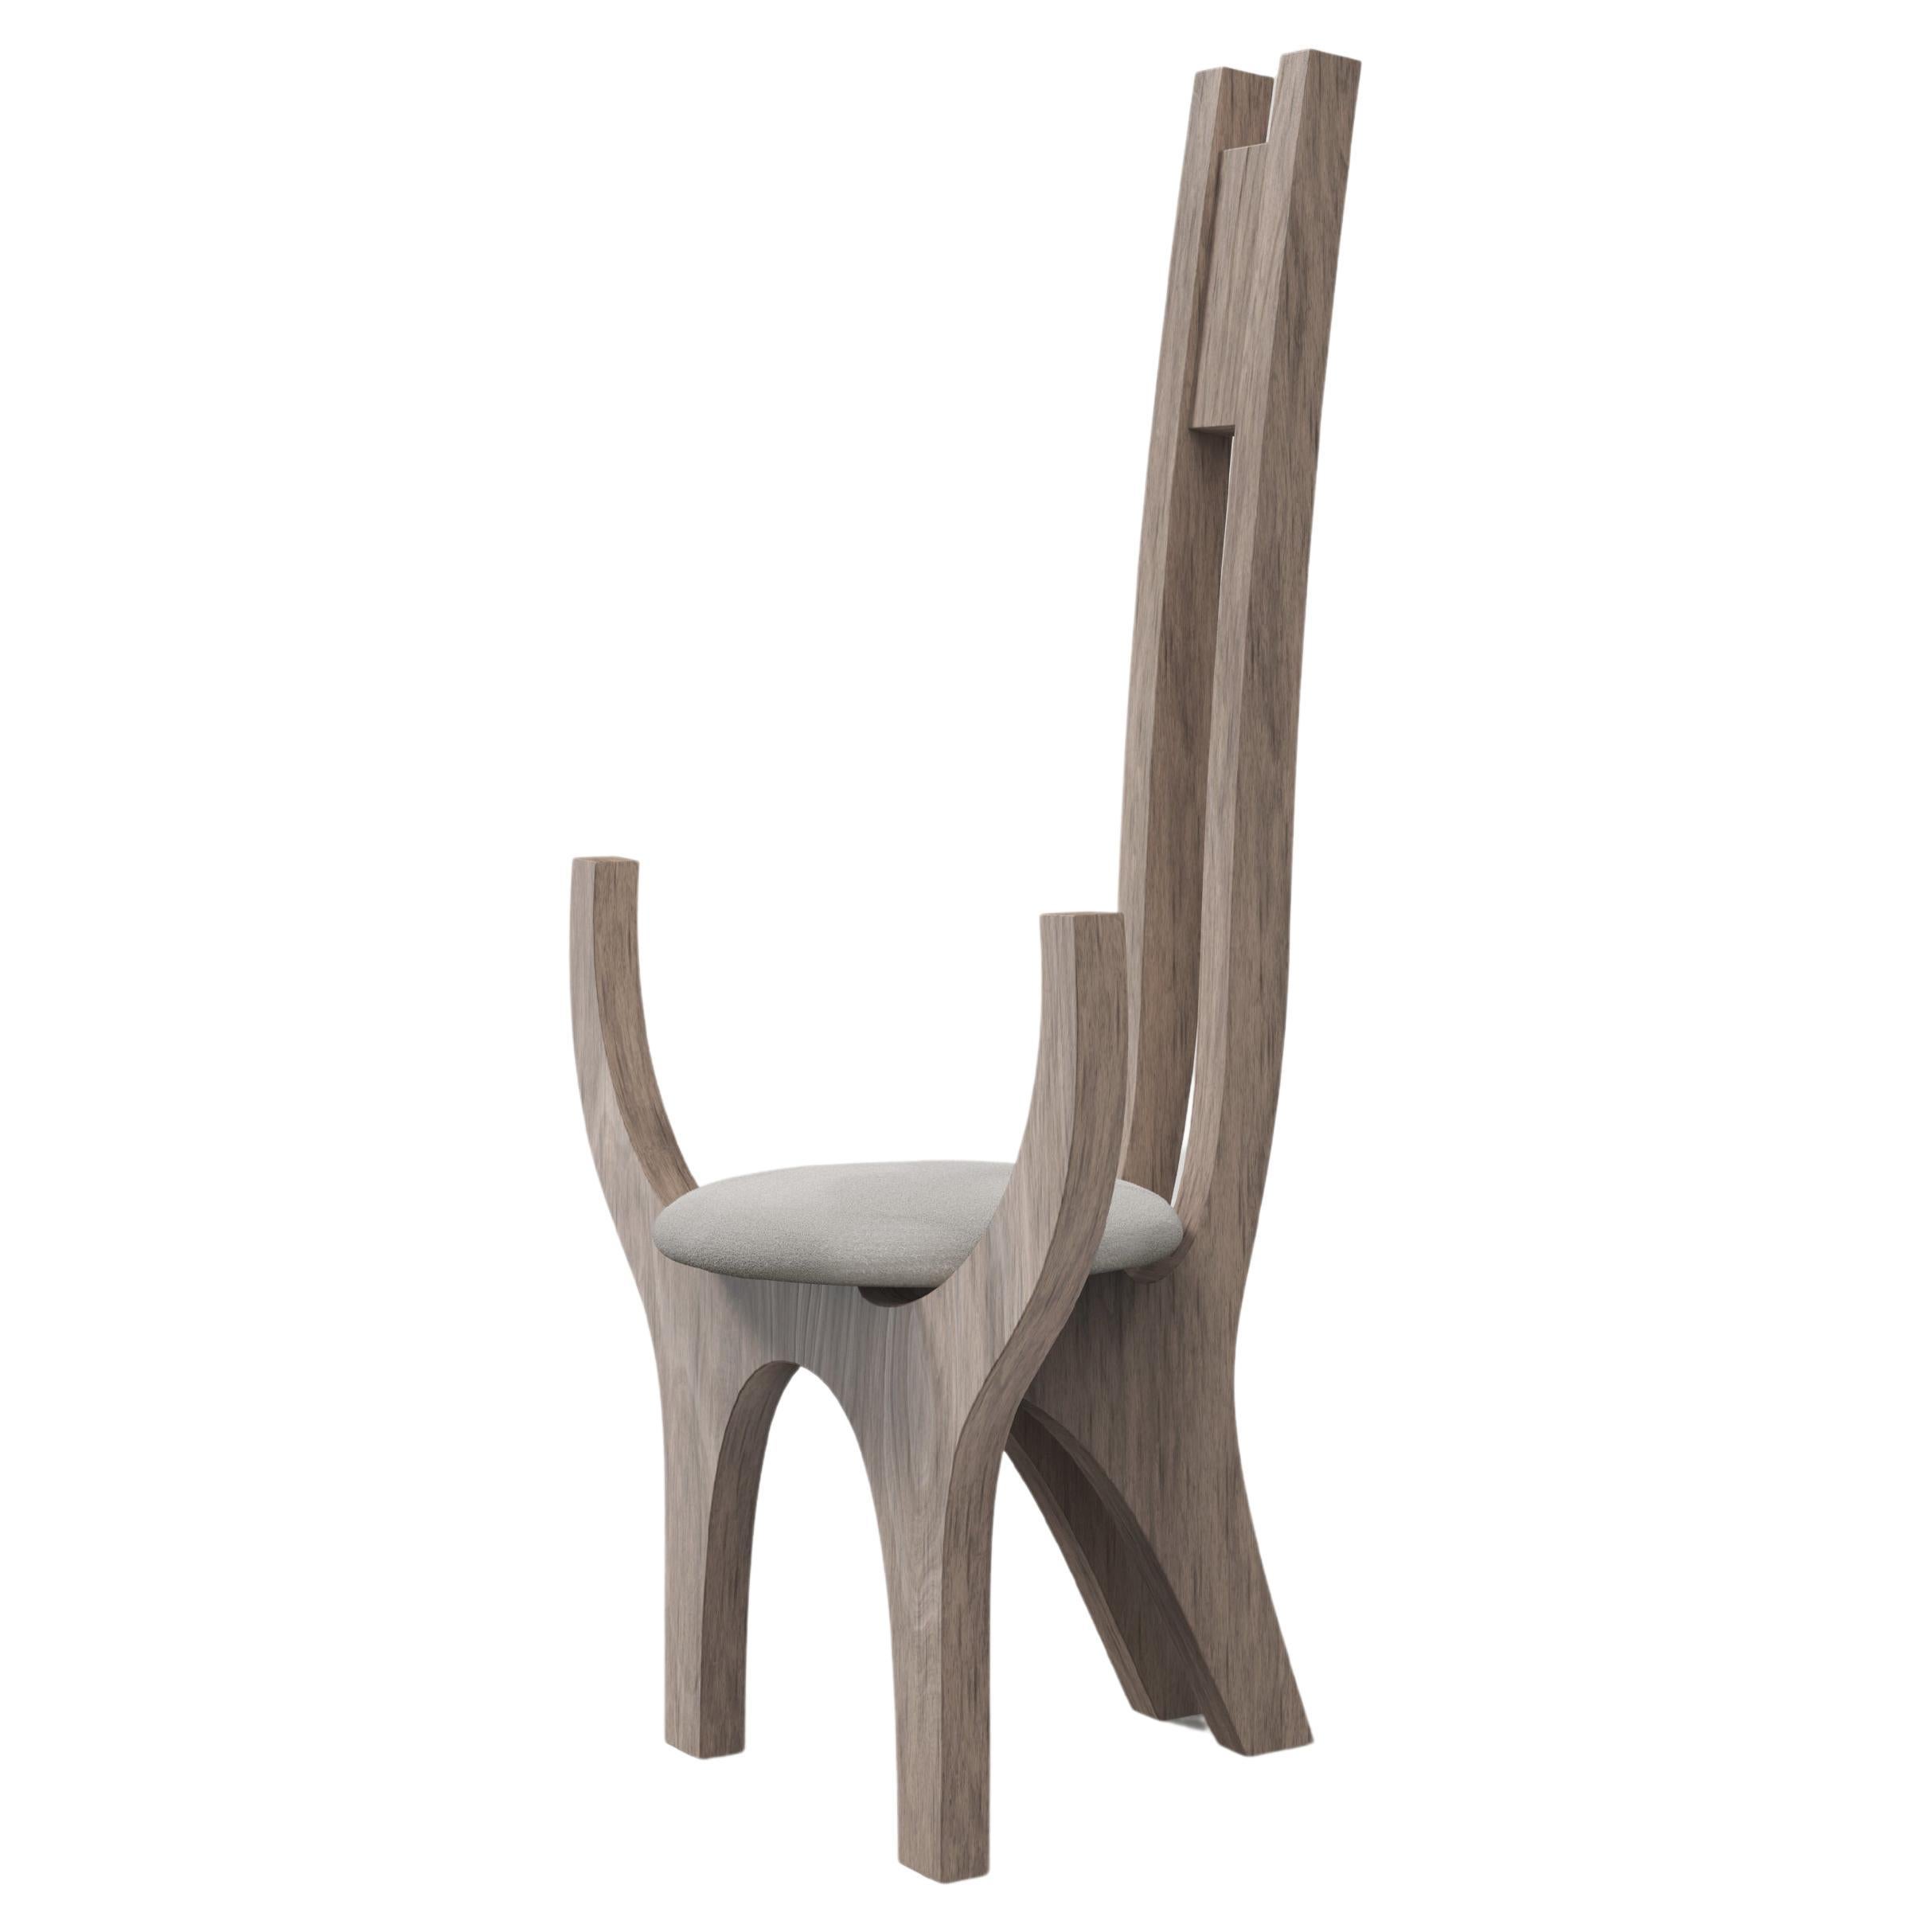 Contemporary Limited Edition Ash Wood Armchair, Zero V2 by Edizione Limitata